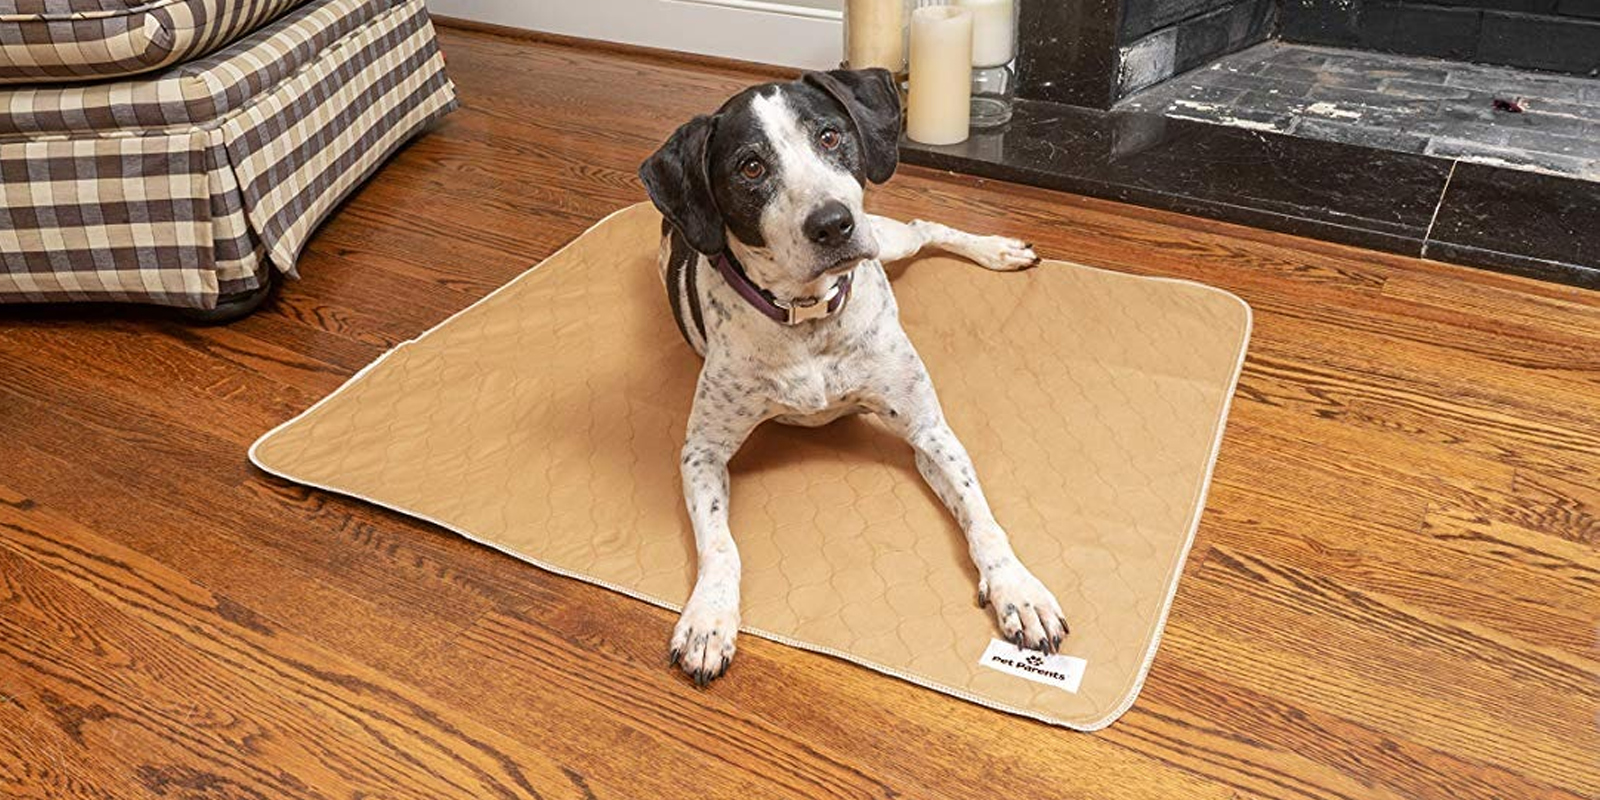 Empapadores para incontinencia para perros caja de 2 almohadillas GRANDES Almohadillas reutilizables perros PET IMPACT Alfombras de entrenamiento para cachorros lavable Premium